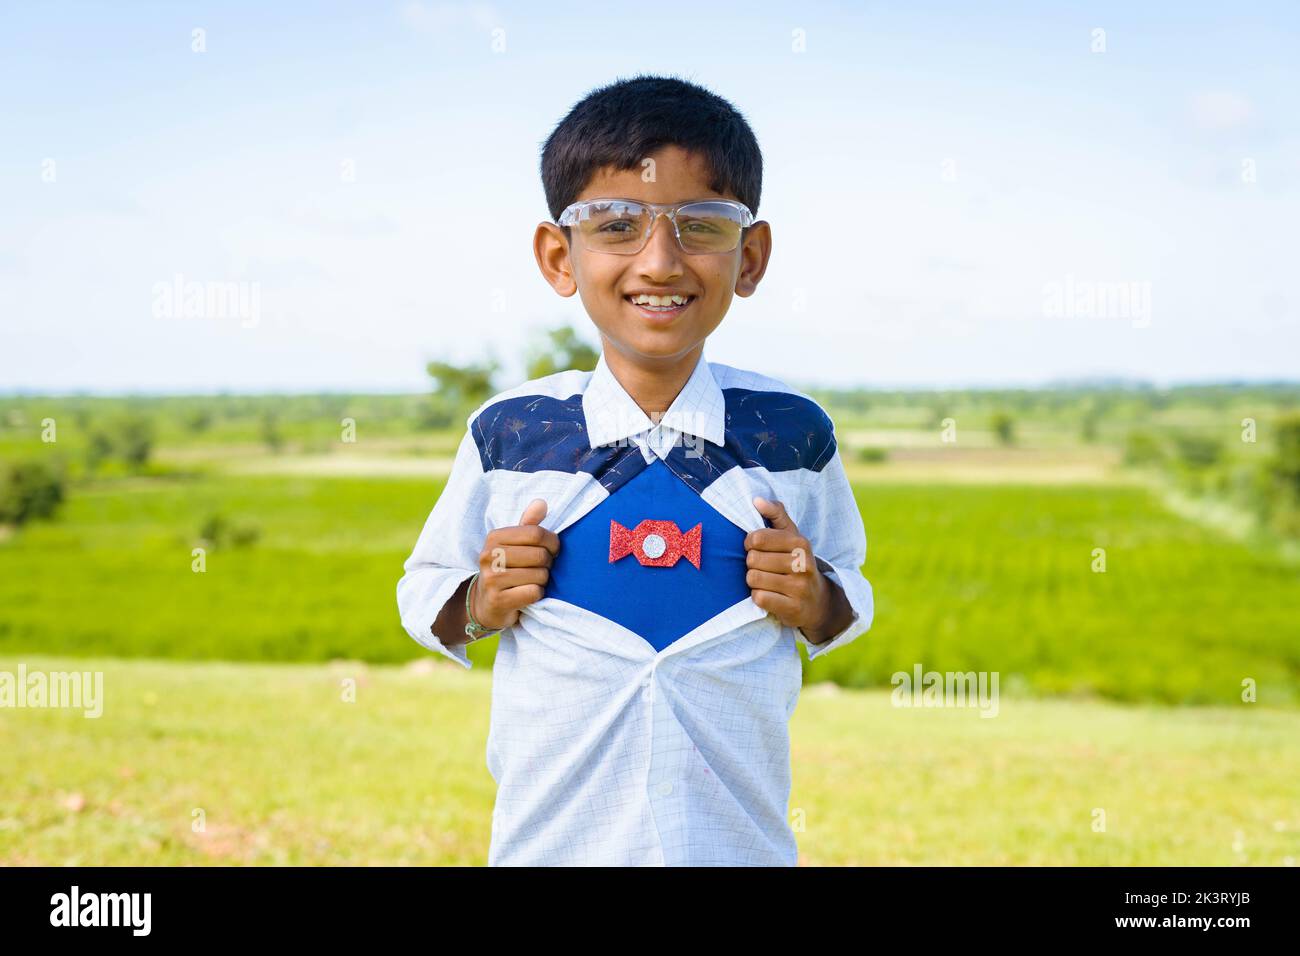 Glücklich lächelndes indisches Teenager-Kind zeigt Supermacht durch Ausziehen des Hemdes durch Blick auf die Kamera - Konzept der Inspiration, Stärke und Glück. Stockfoto